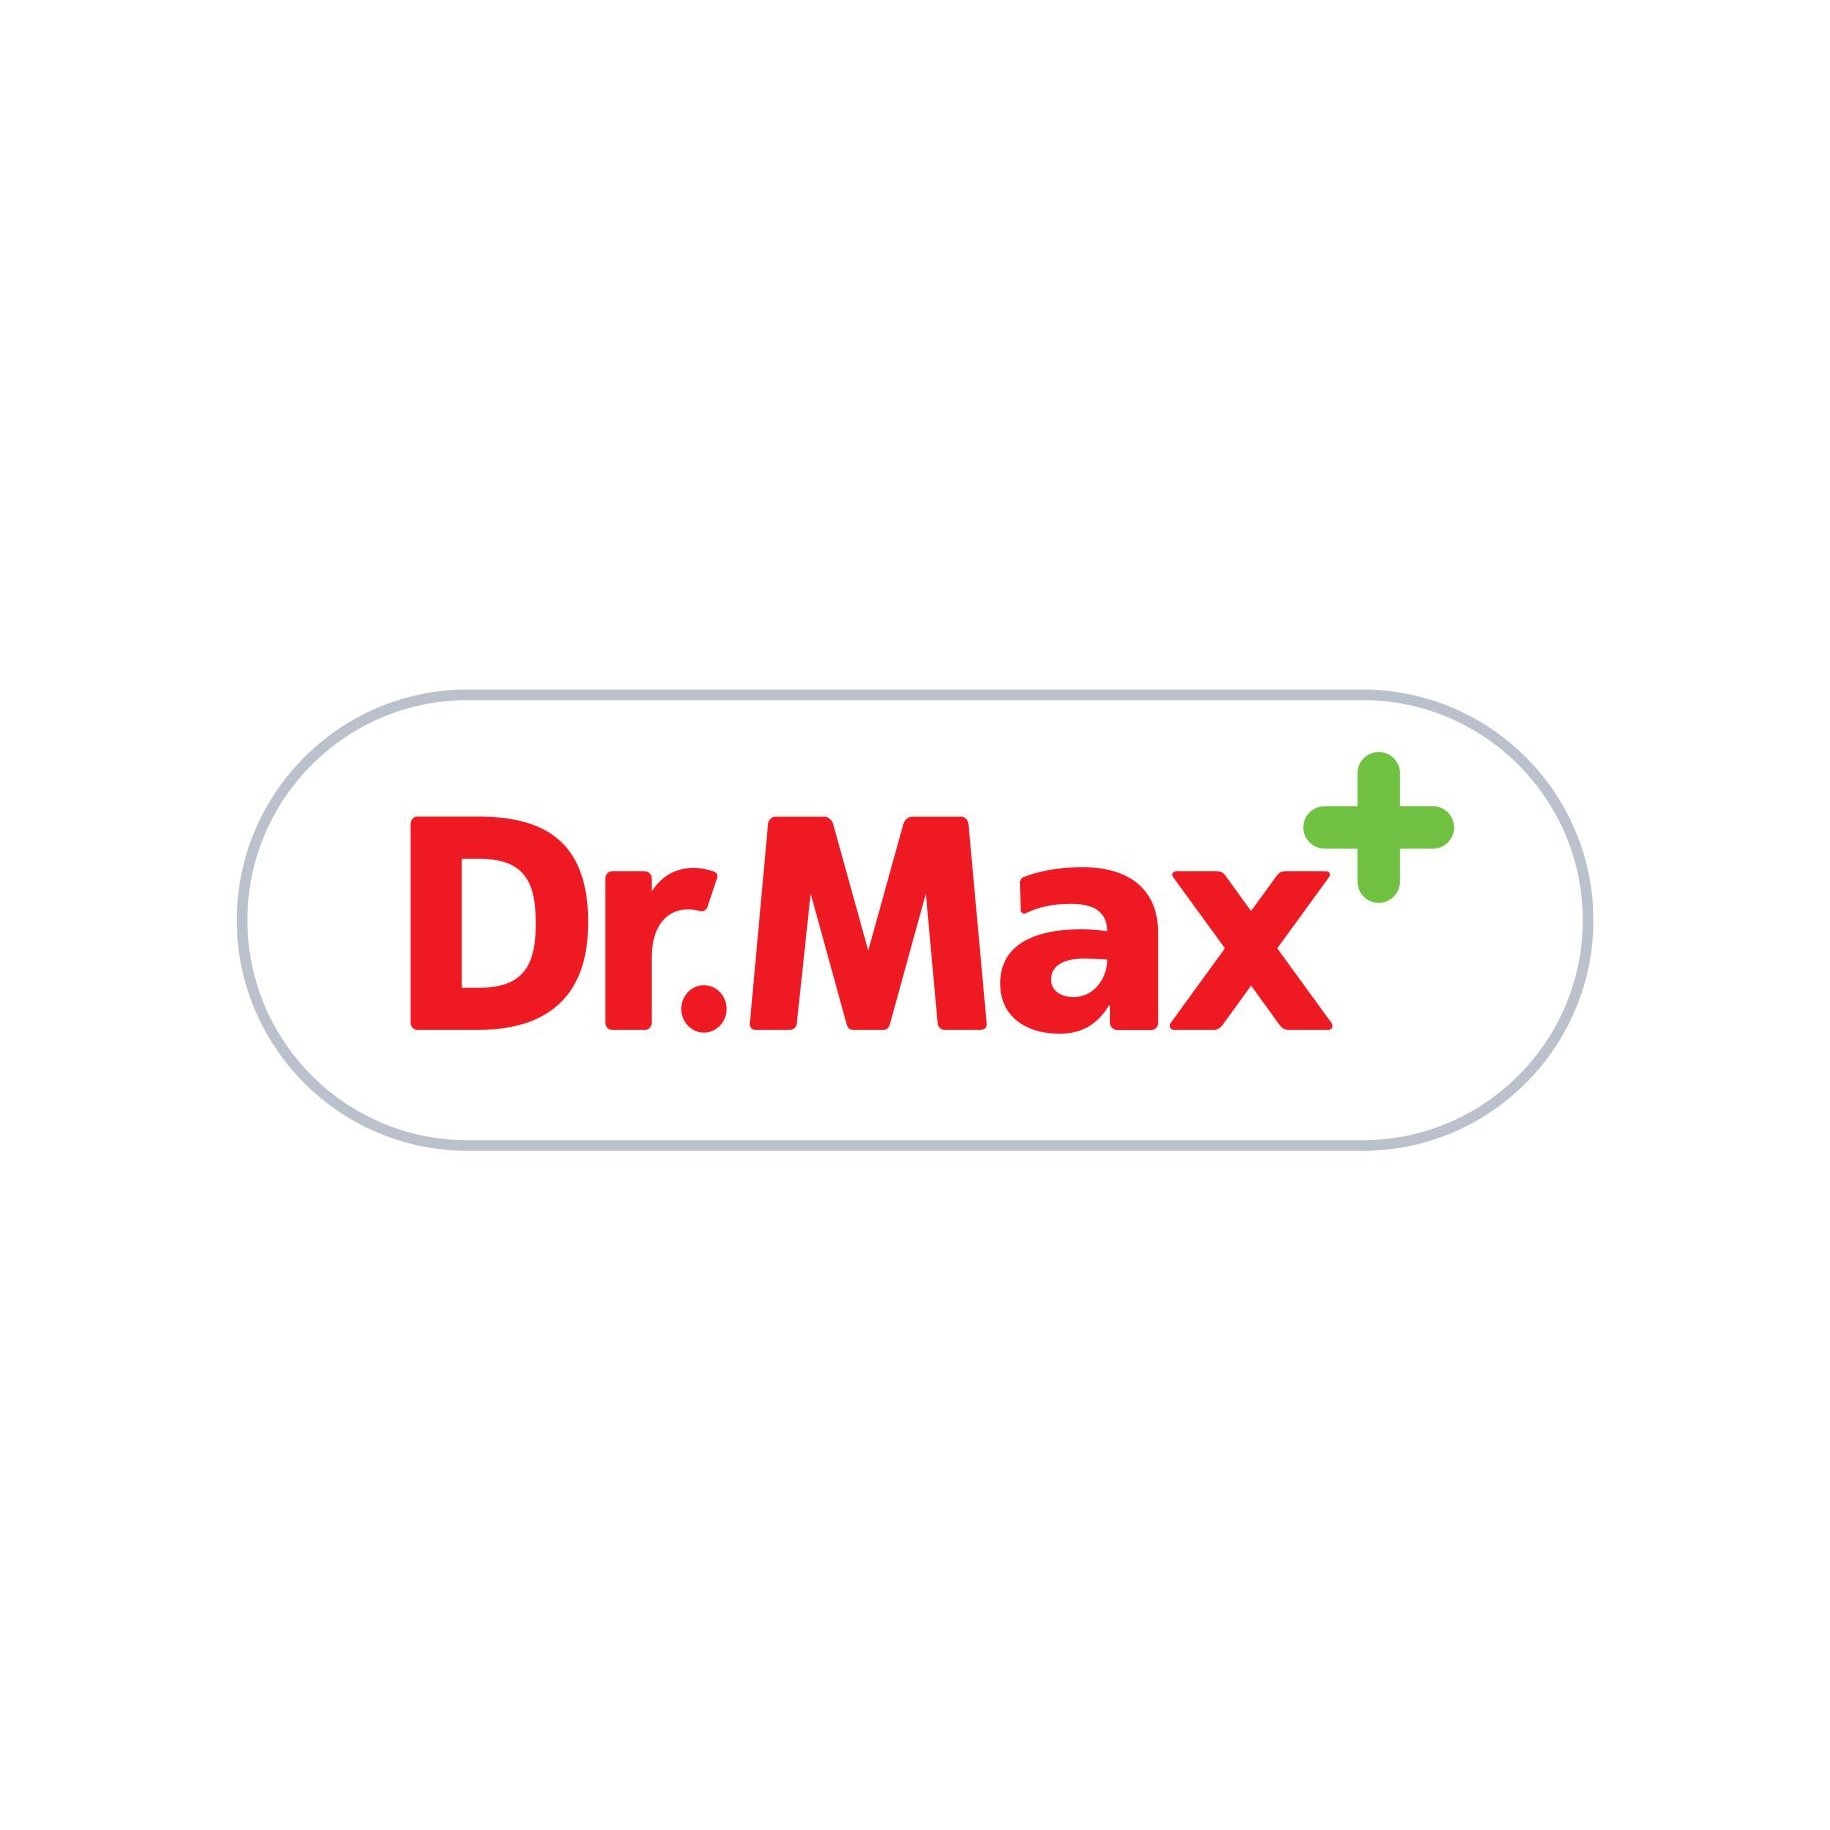 Lekáreň Dr.Max Lekáreň Dr.Max Vrútky 0901 961 135